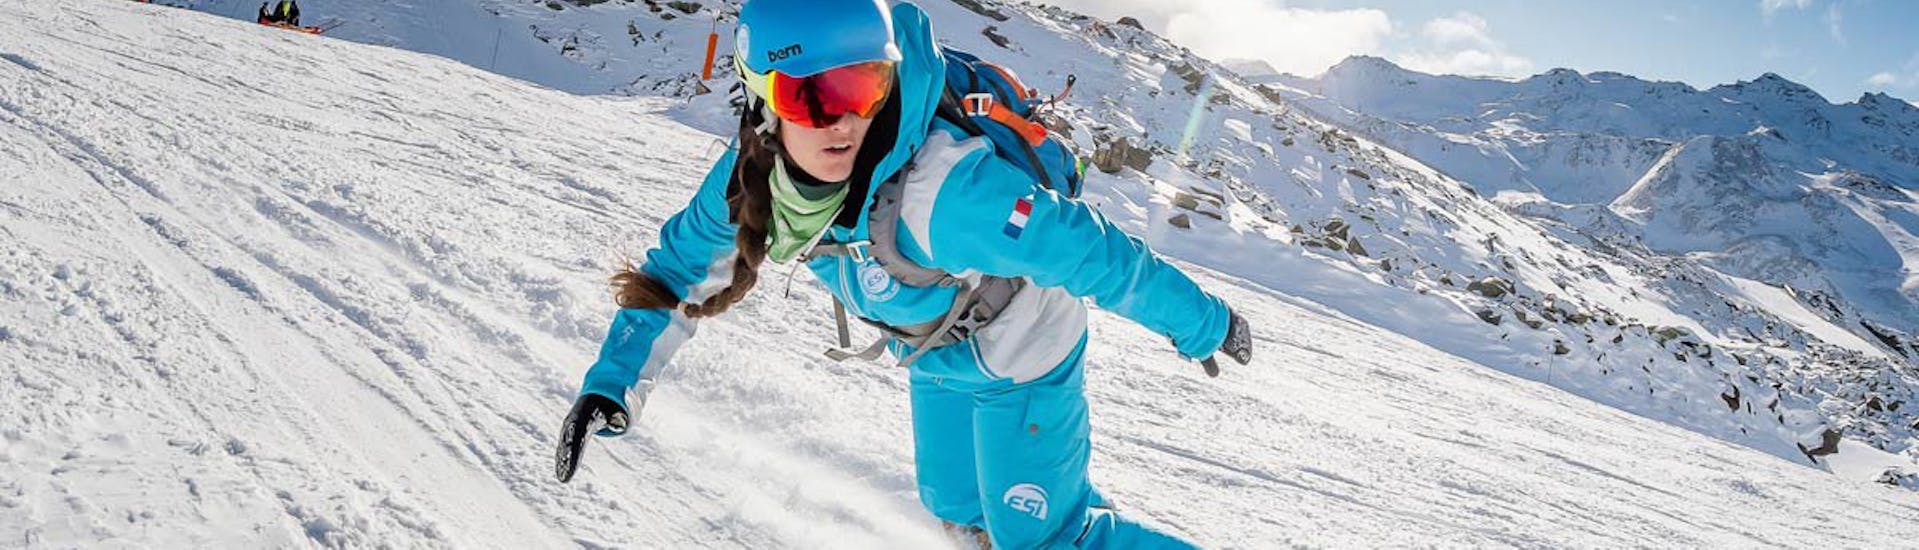 Une monitrice de l'ESI Ski Family exécute des virages en snowboard sur les pistes de Chamonix pendant un cours particulier de snowboard. 